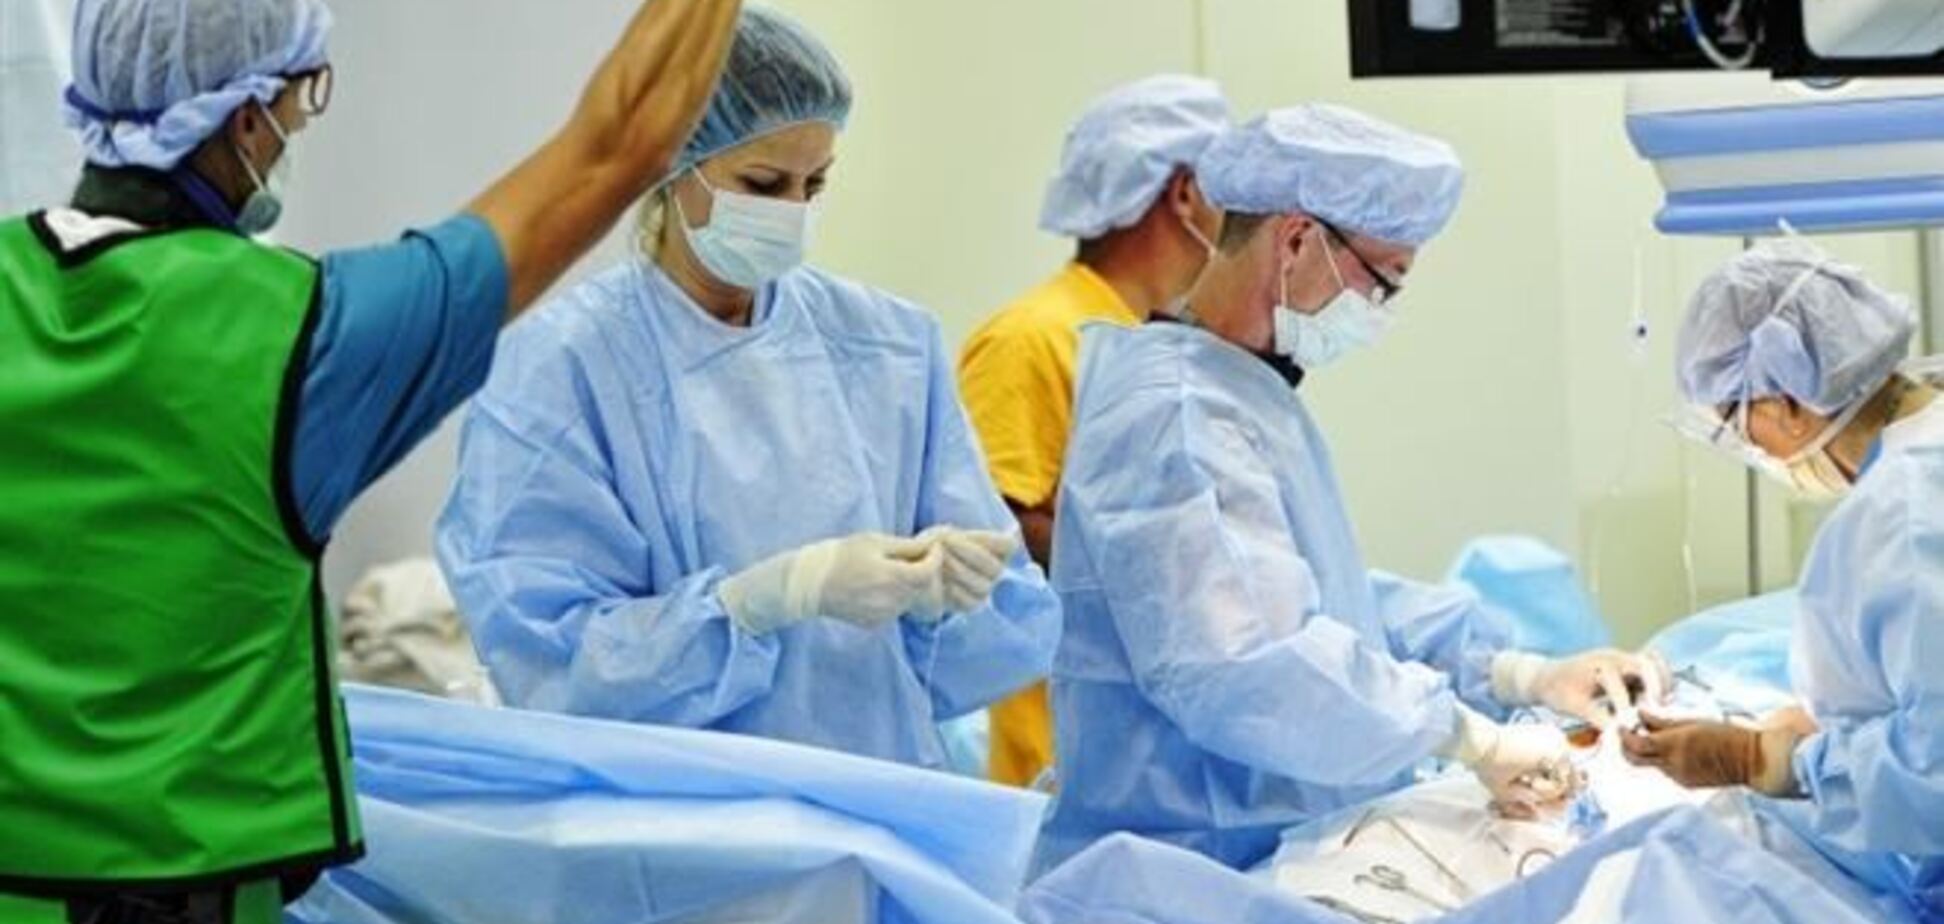 Во Франции 75-летний пациент после пересадки искусственного сердца идет на поправку